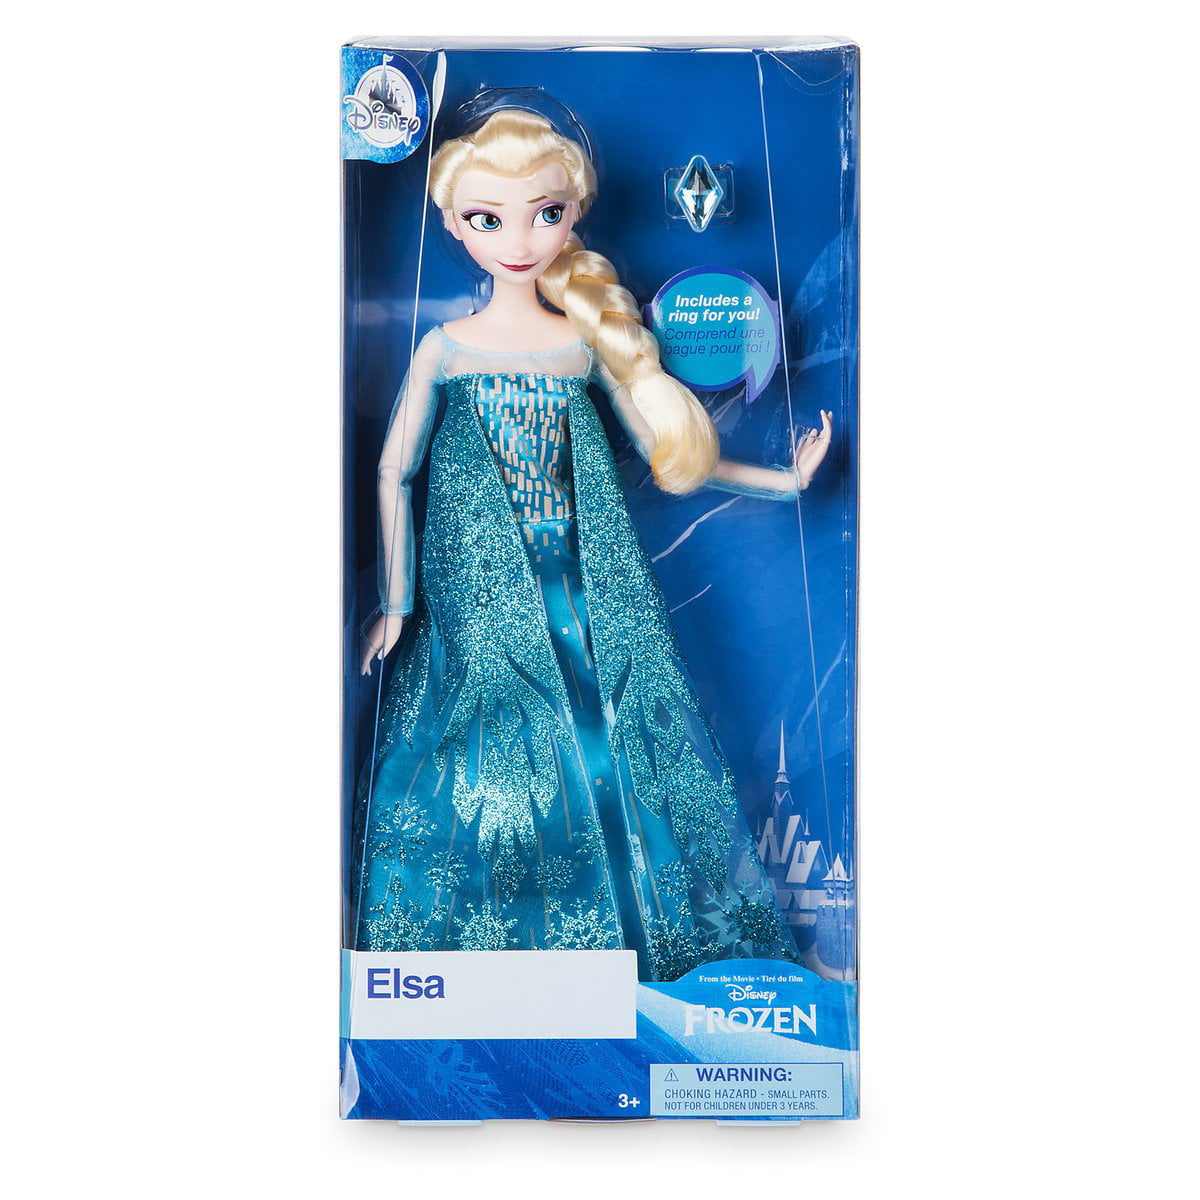 Disney Princess Frozen Elsa Classic 